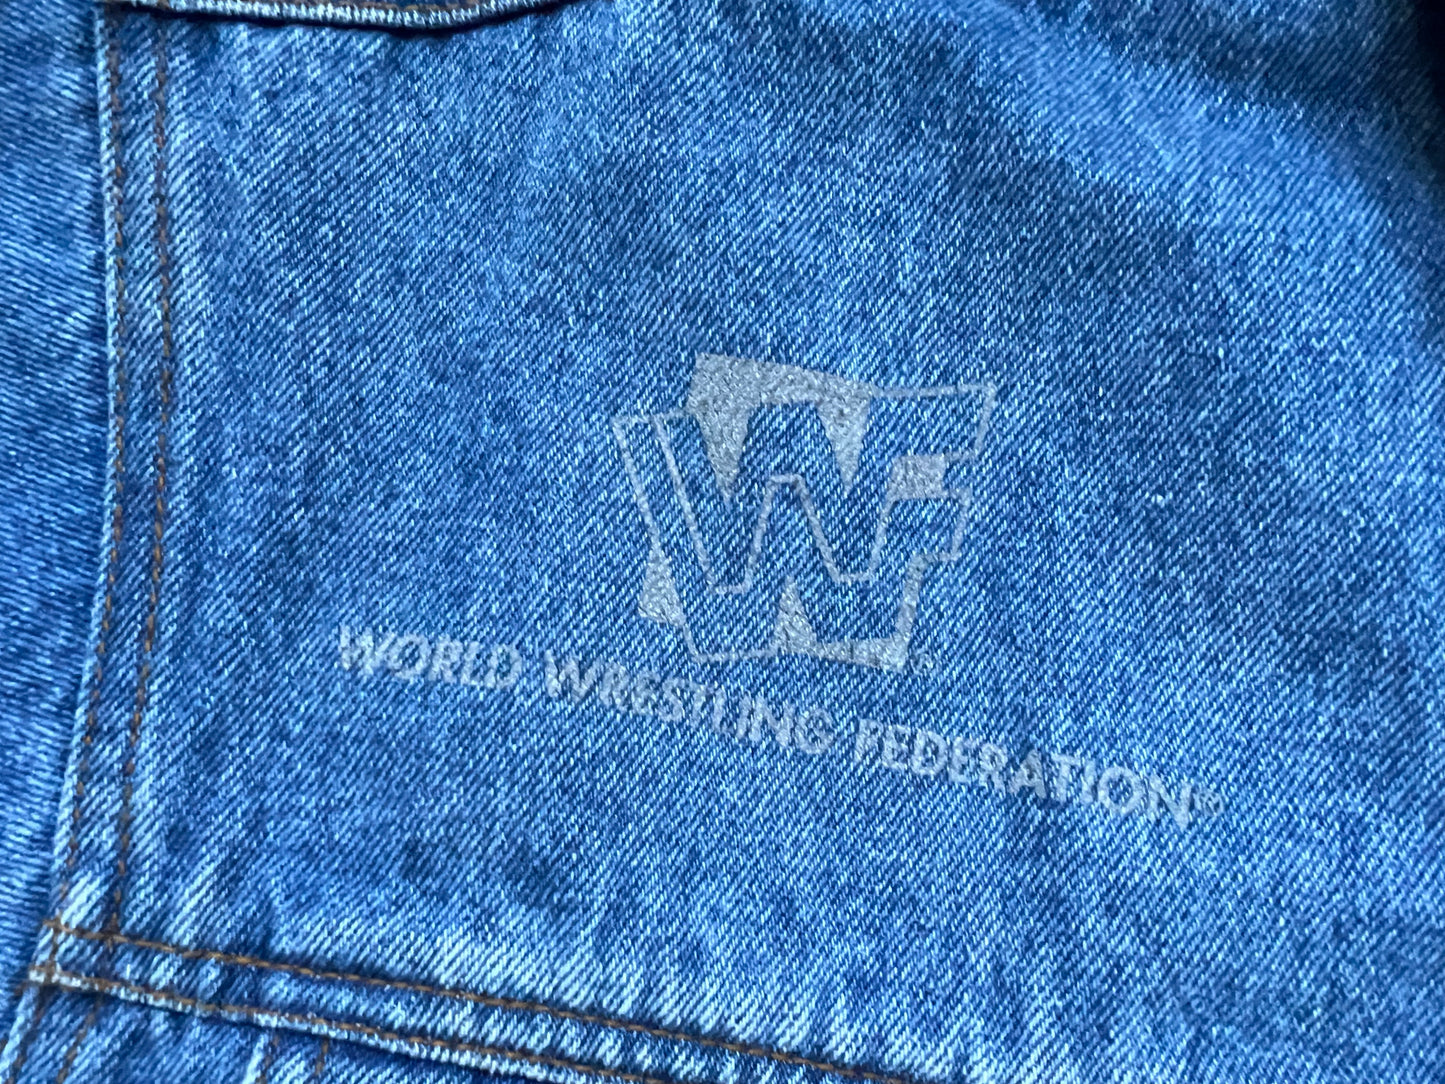 1996 WWF Diesel denim jacket